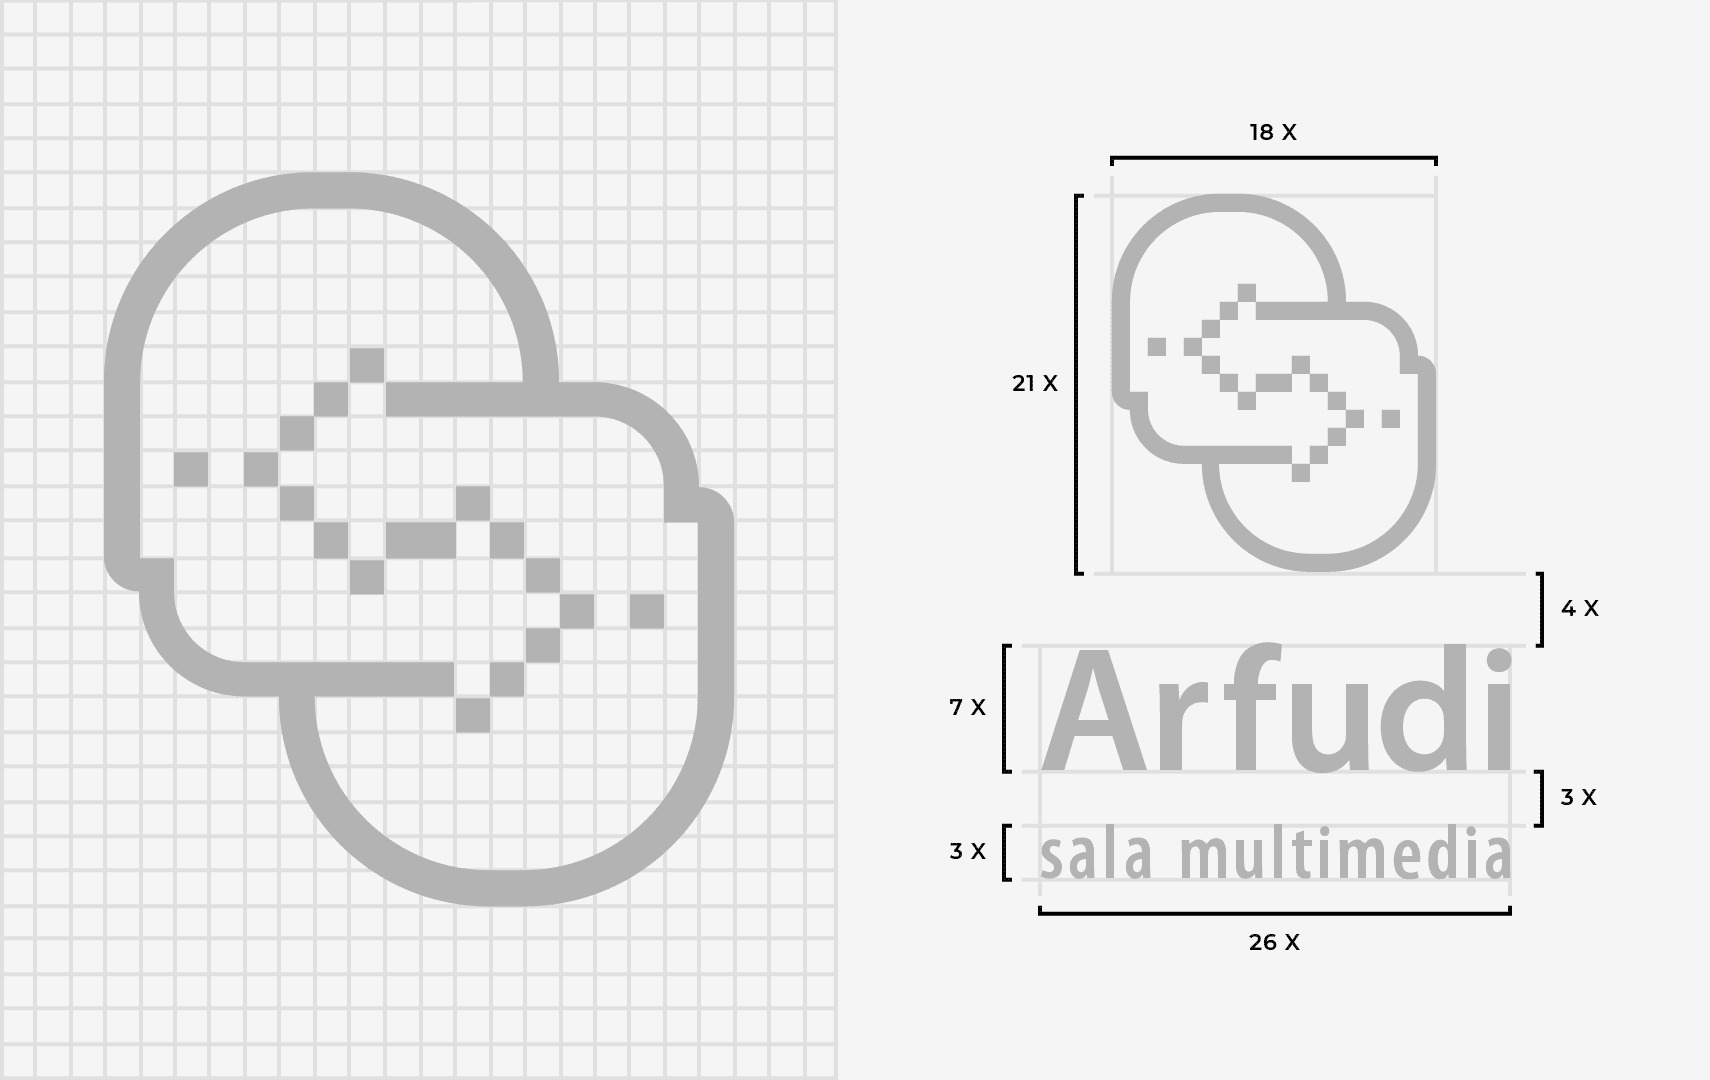 Retícula de construcción del logo Arfudi